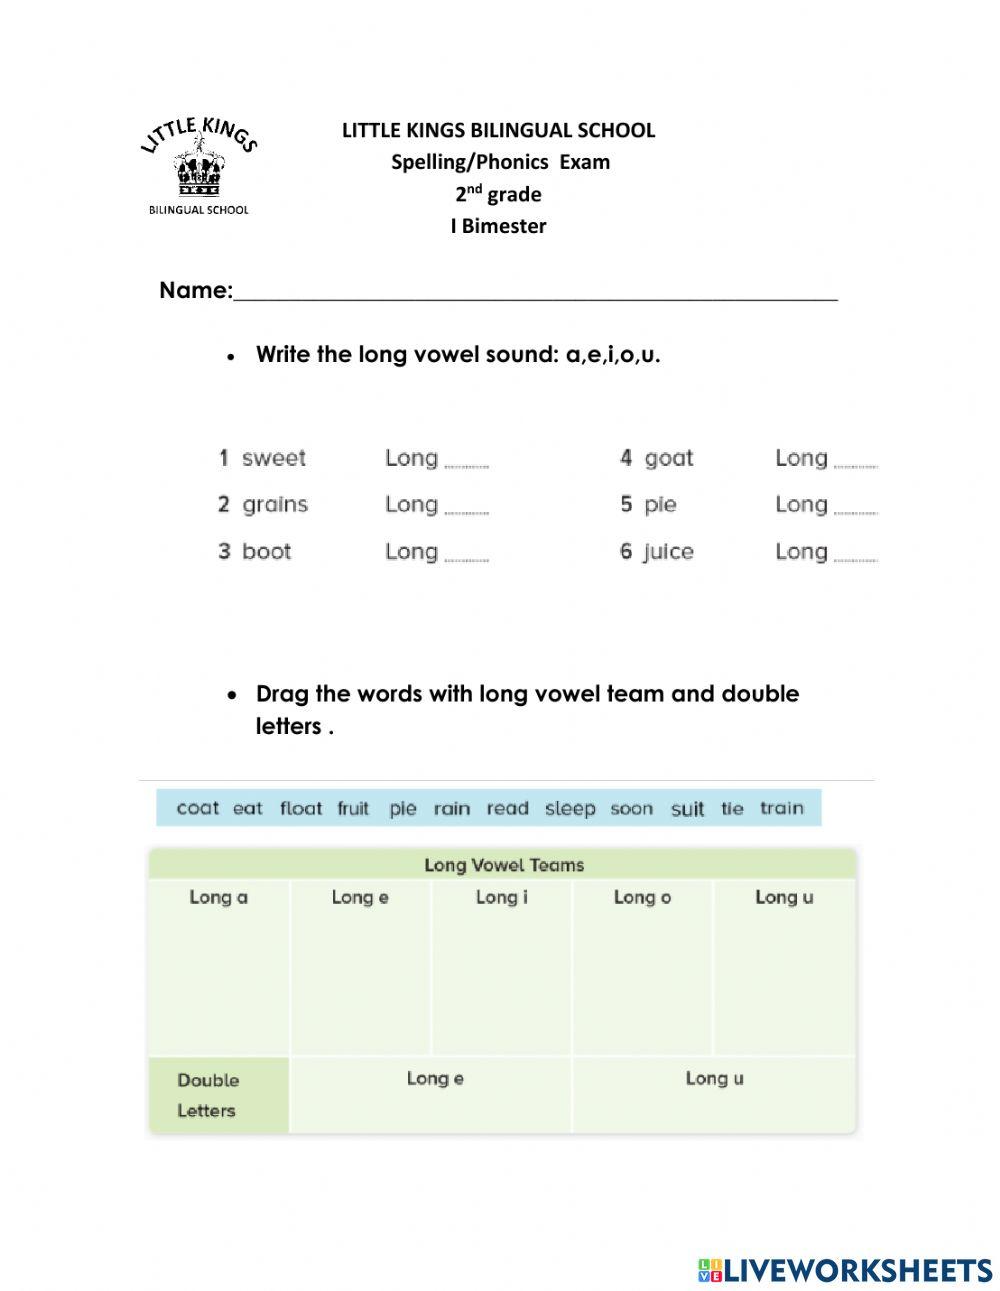 Spelling-Phonics exam